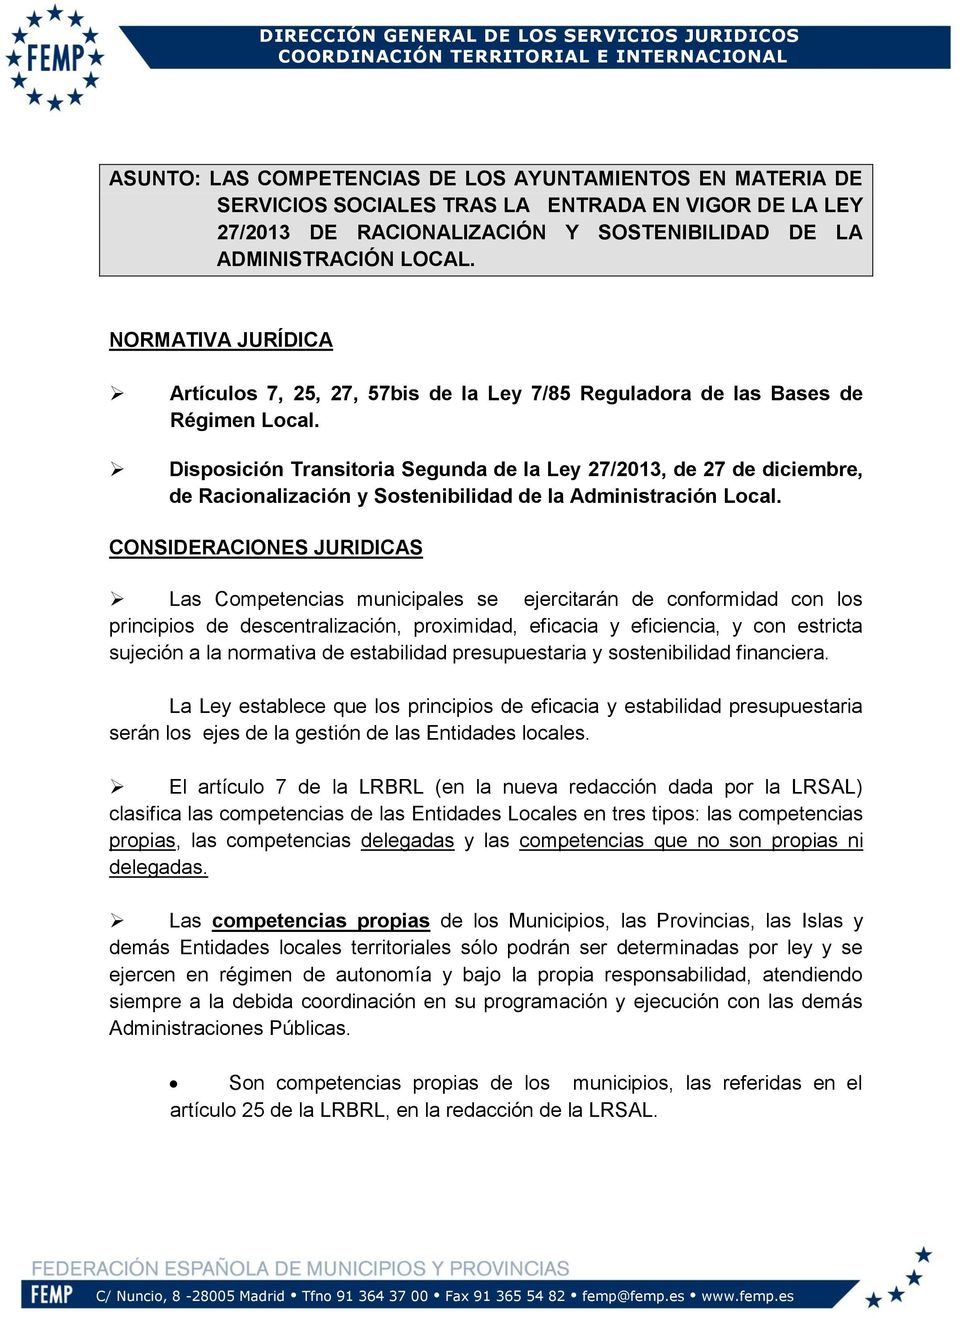 Disposición Transitoria Segunda de la Ley 27/2013, de 27 de diciembre, de Racionalización y Sostenibilidad de la Administración Local.